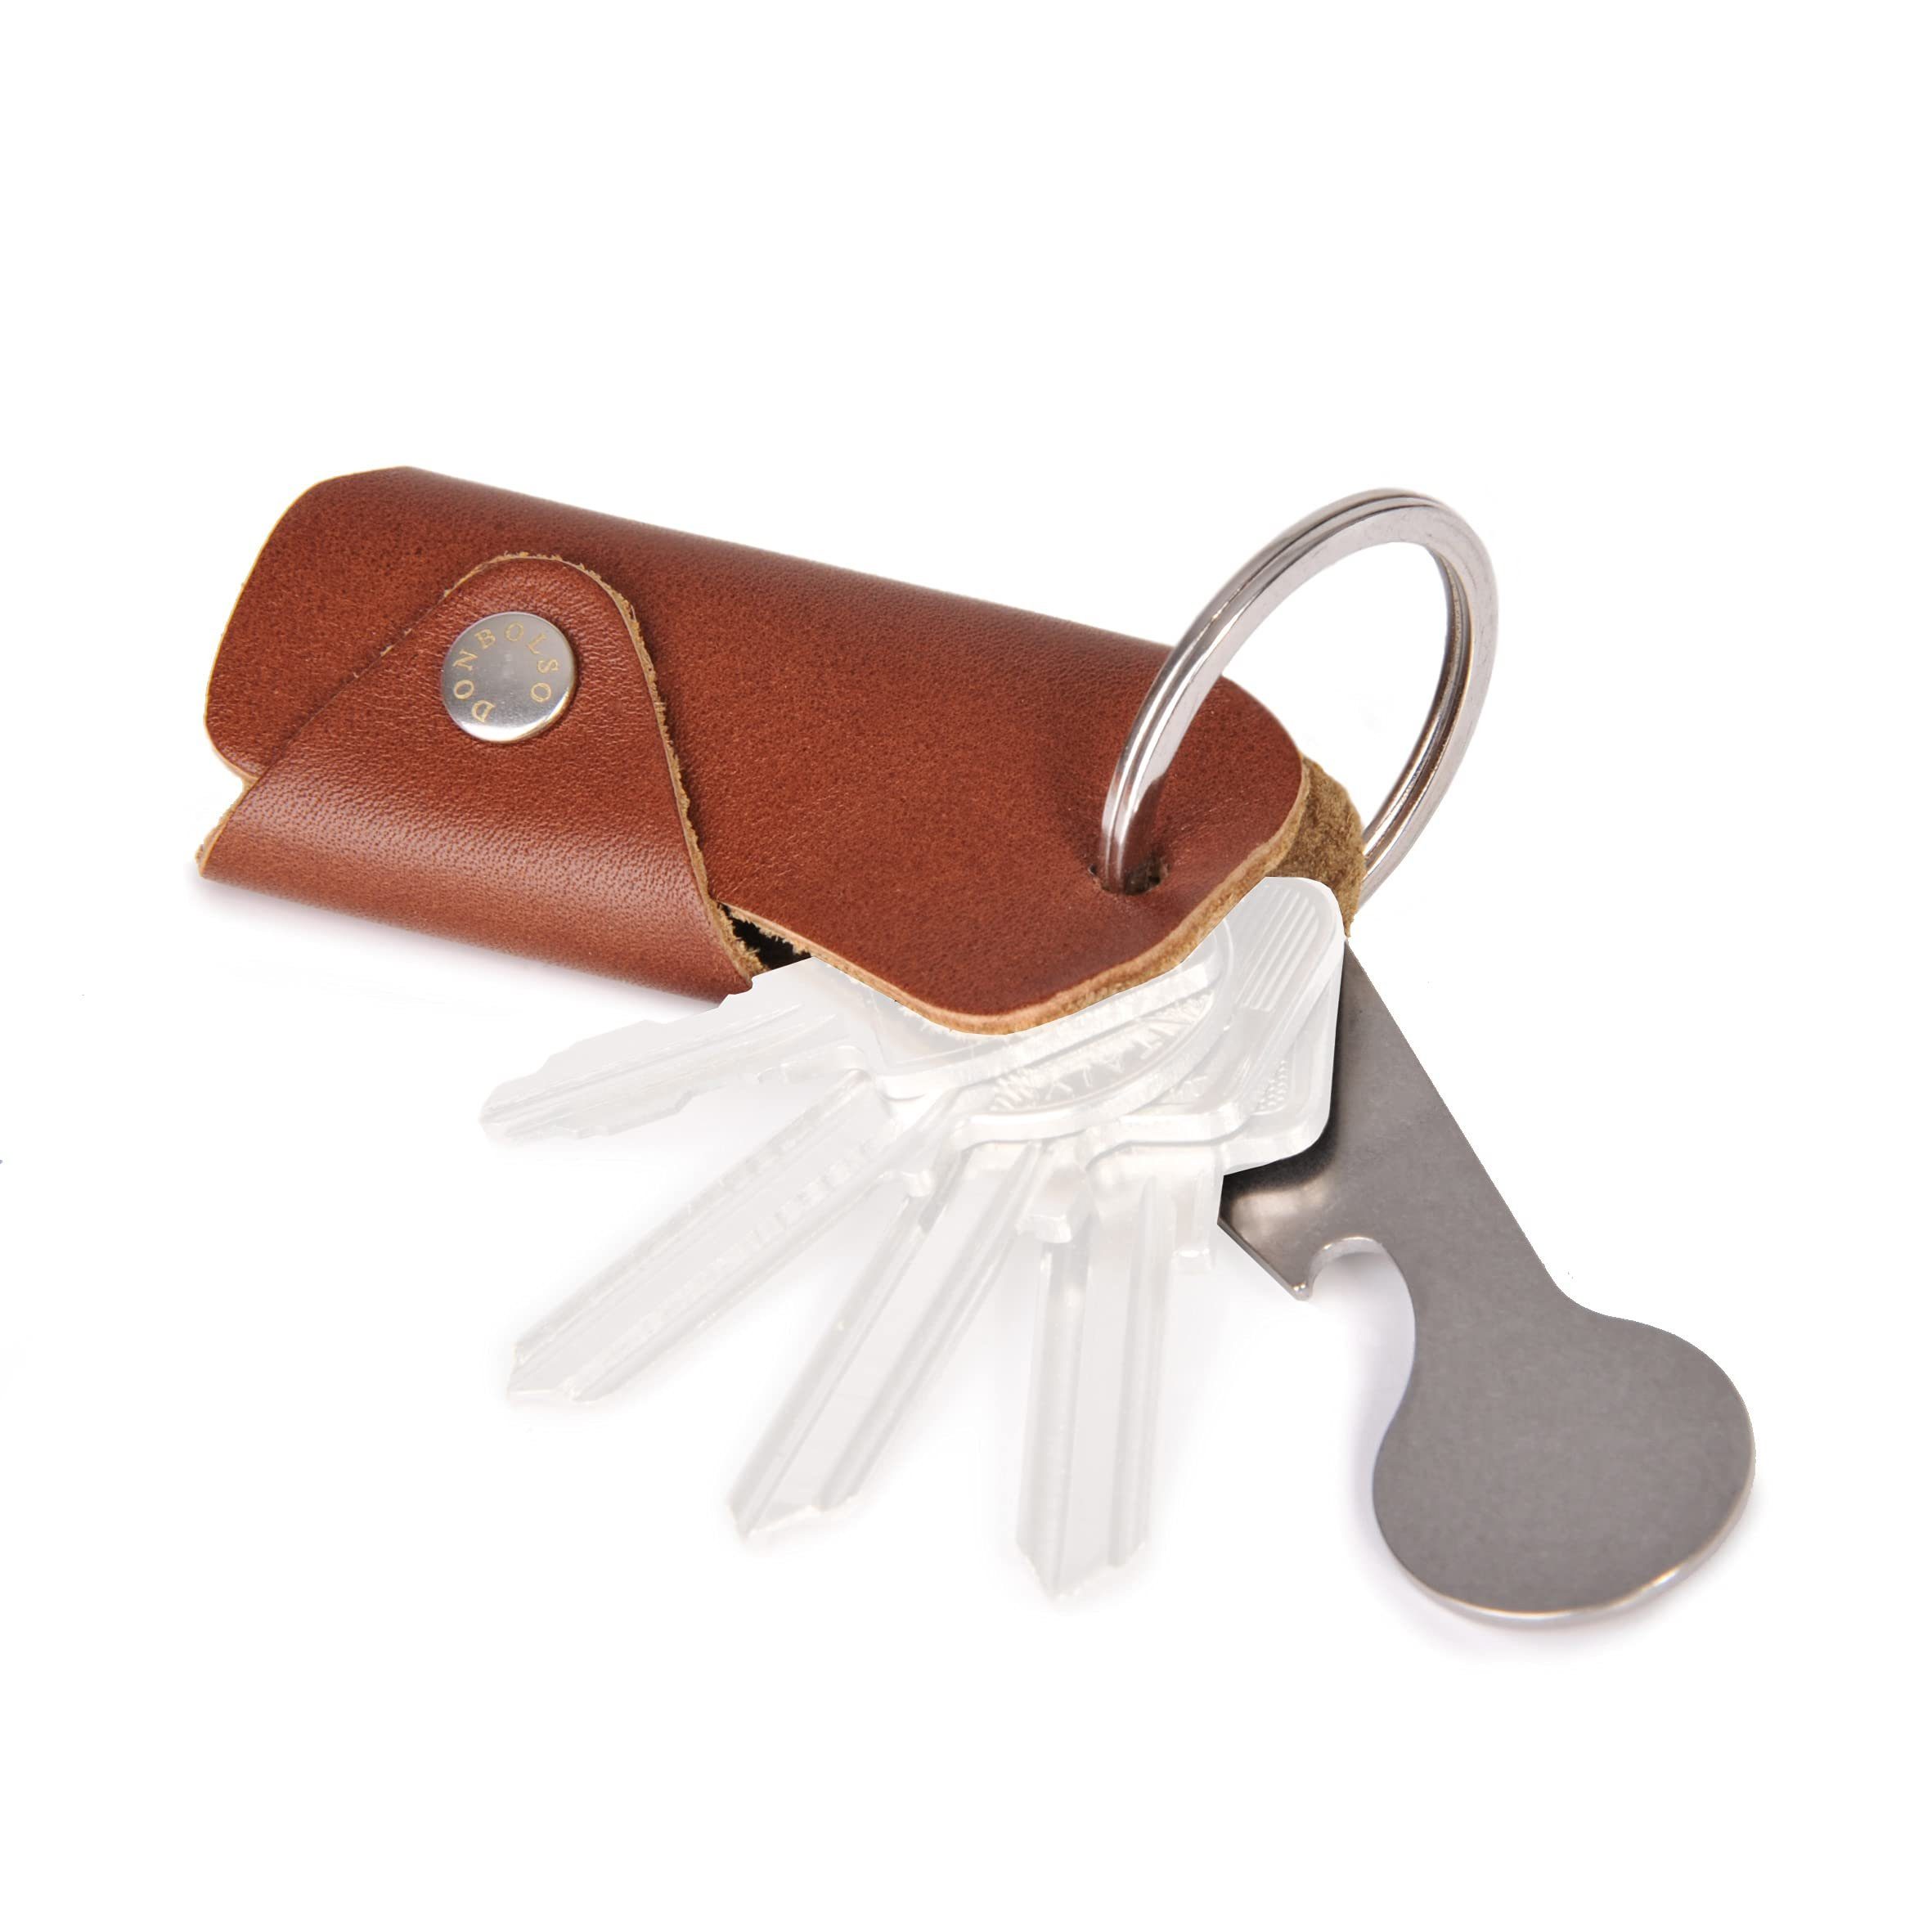 Donbolso Schlüsseltasche Leder Schlüsseletui für 1-6 Schlüssel, Damen/Herren, Nappa Cognac, Nappa Cognac Sschlüsselmäppchen